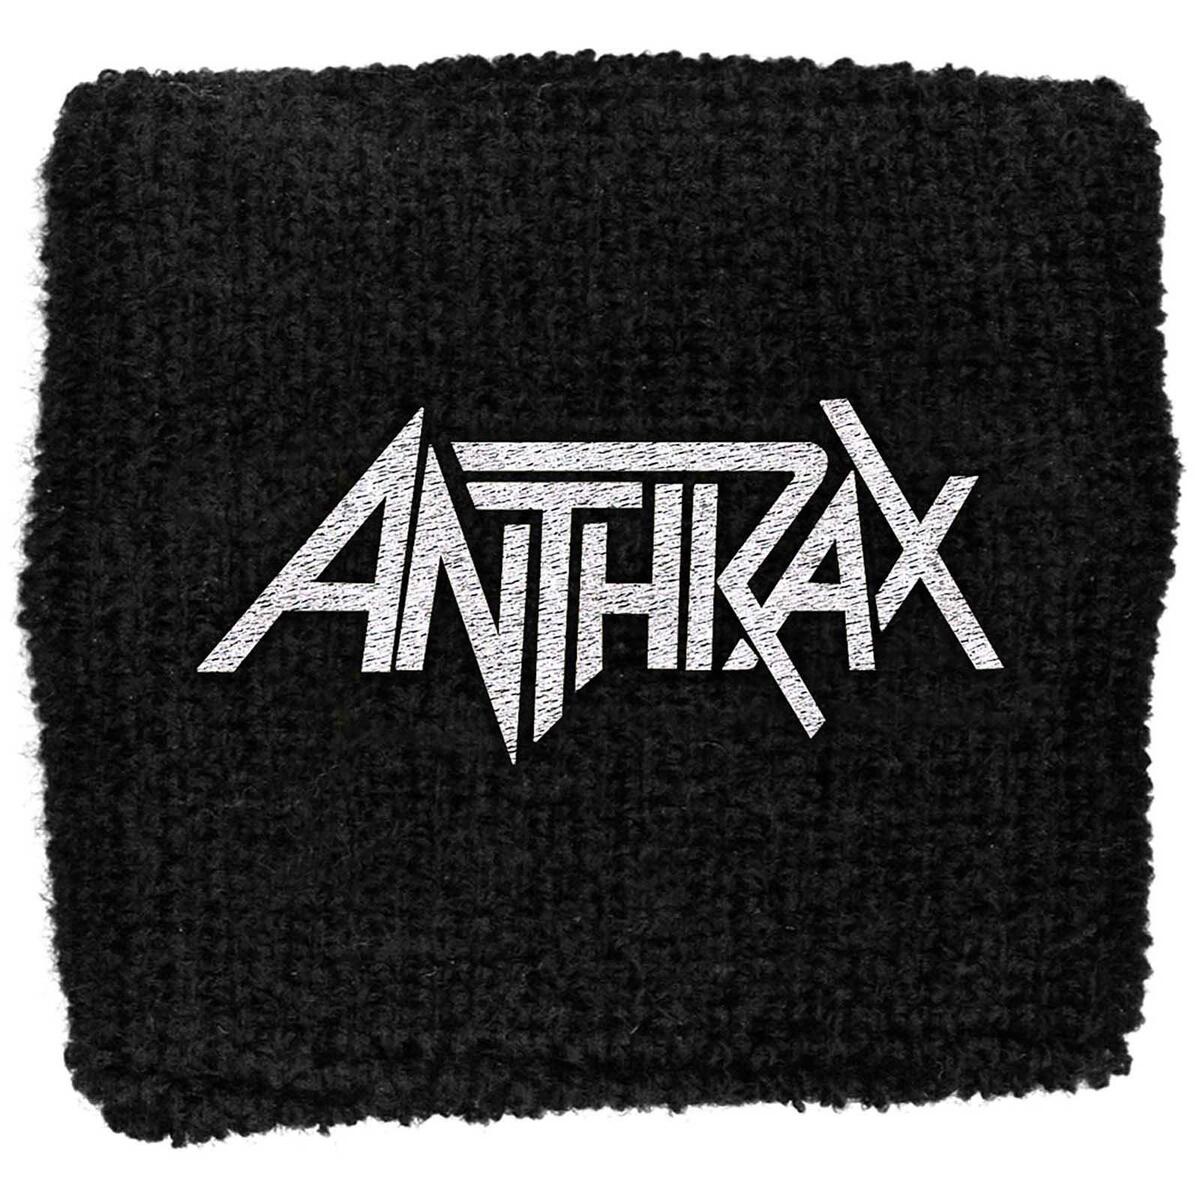 アンスラックス Anthrax オフィシャル商品 ユニセックス ロゴ 布製 リストバンド スエットバンド 【海外通販】